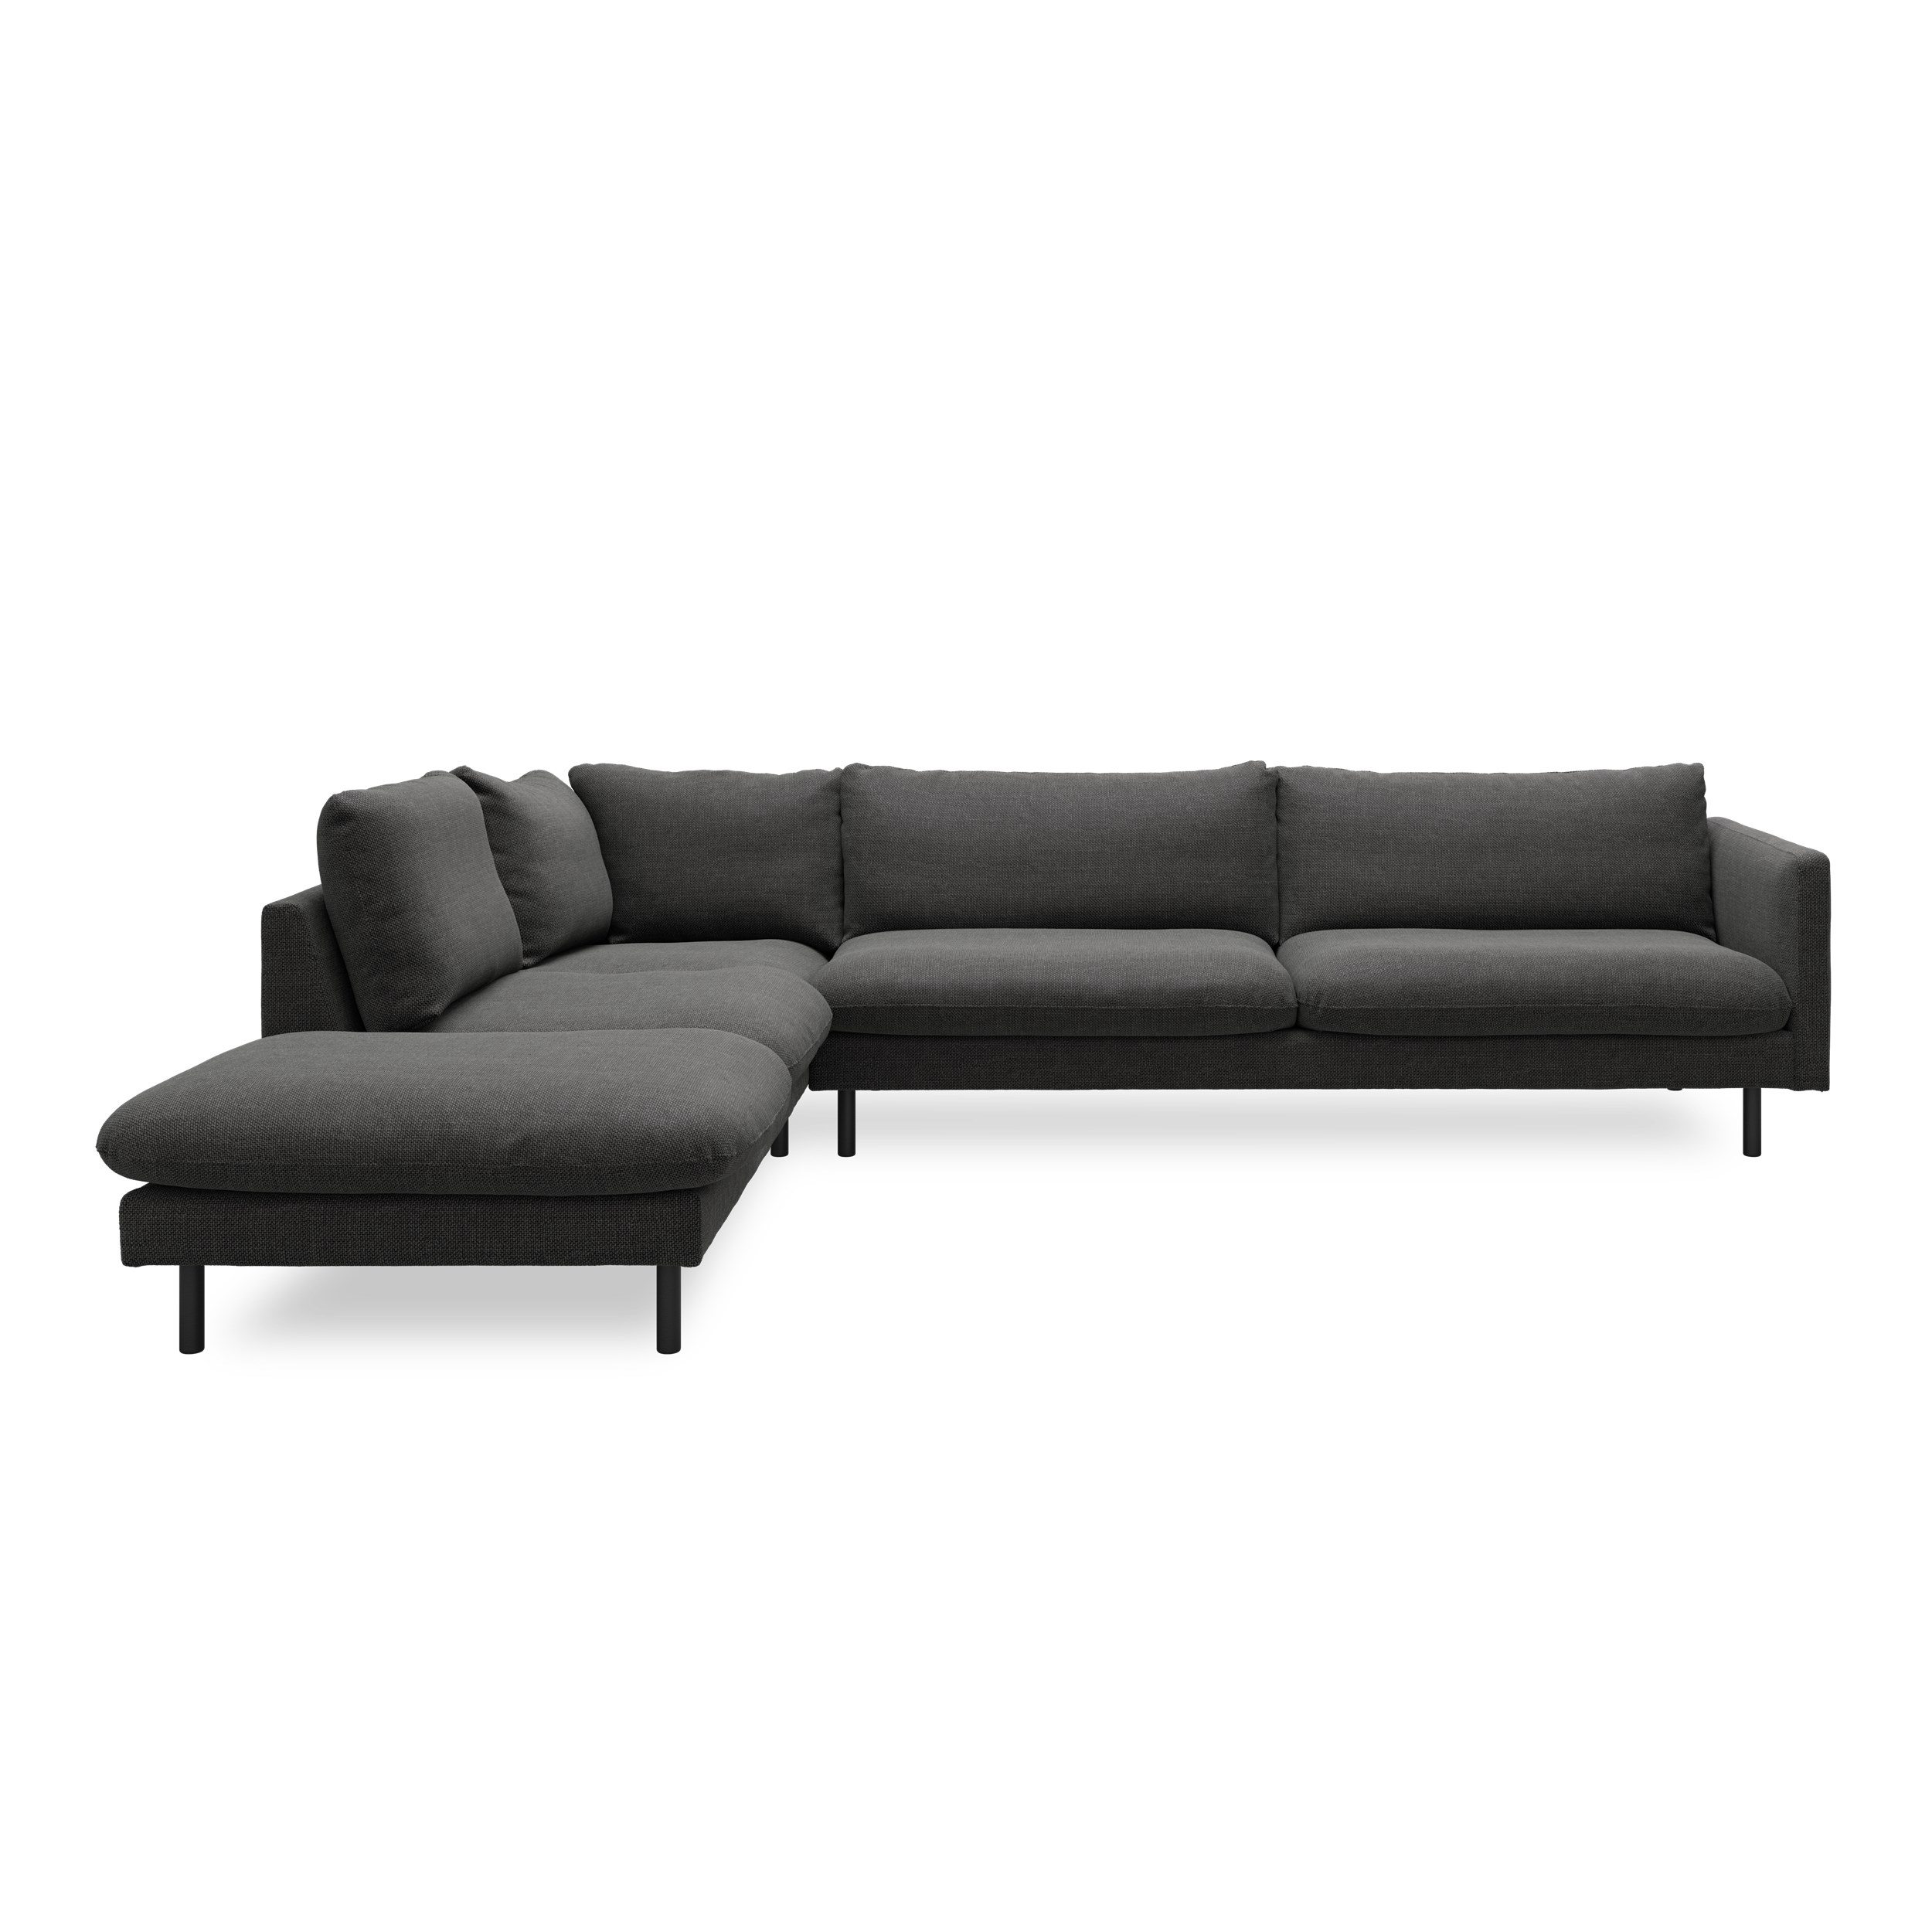 Bjorn soffa med divan - ben i svart metall